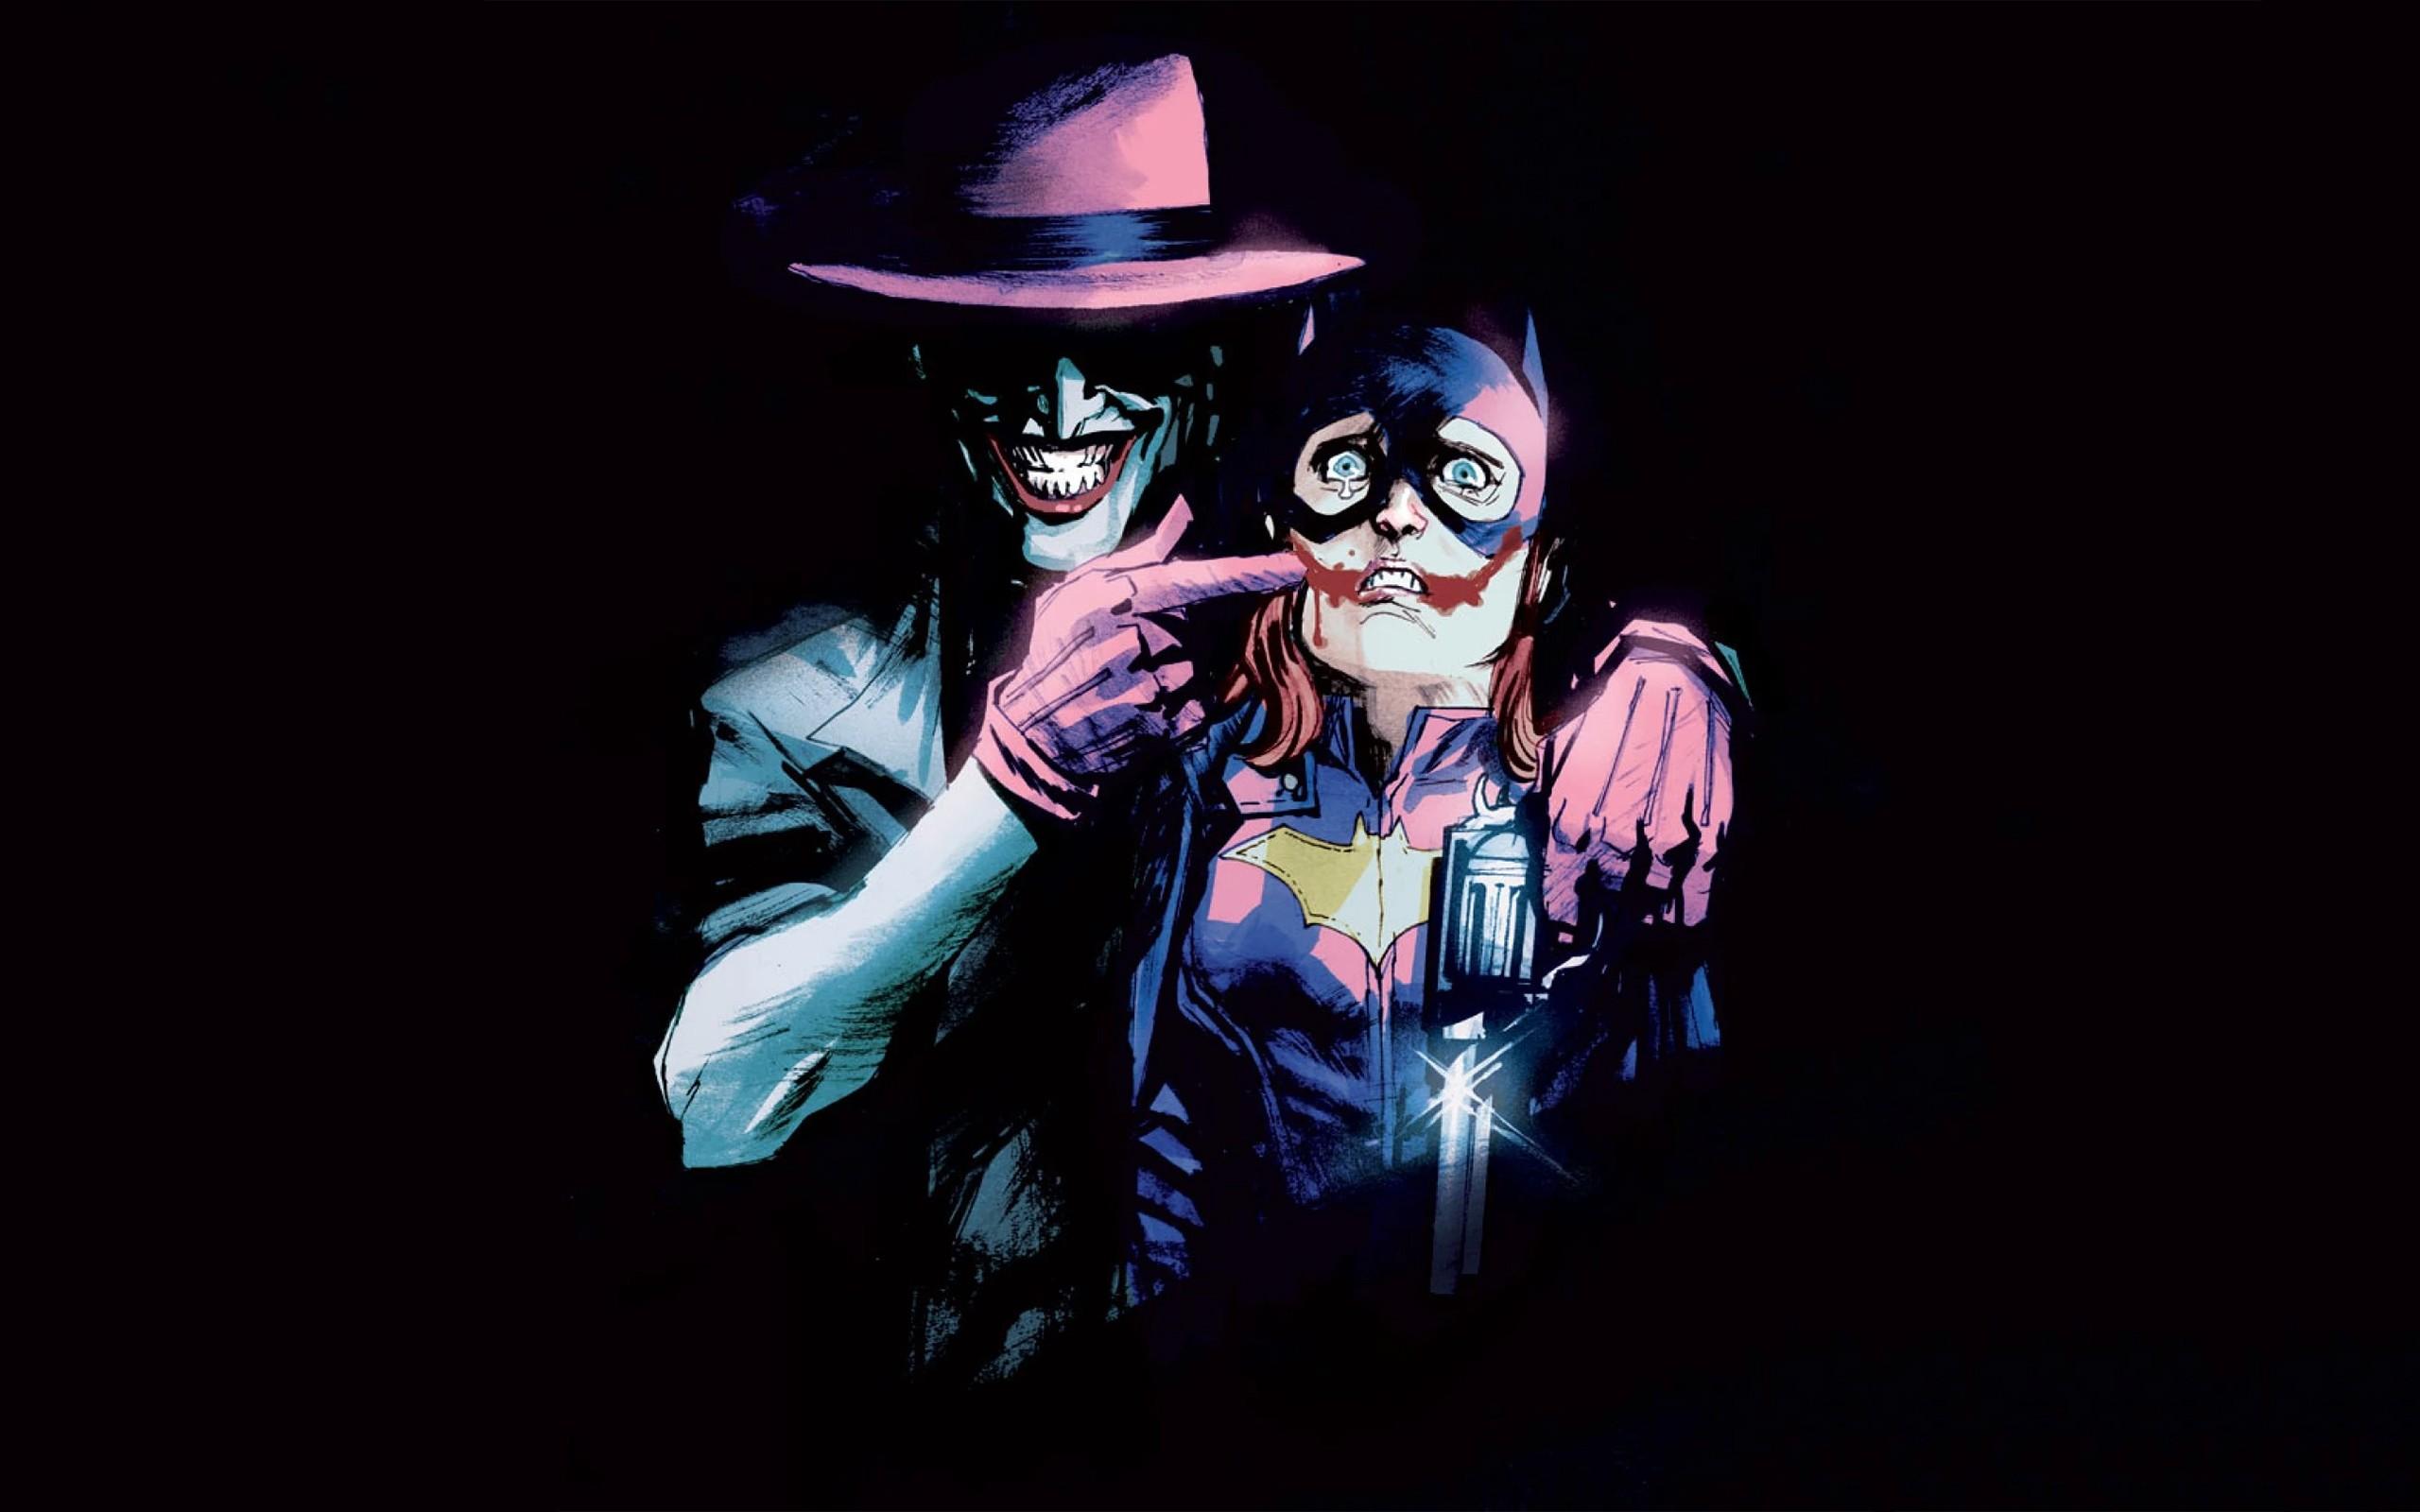 Wallpaper, illustration, Joker, DC Comics, Batgirl, darkness